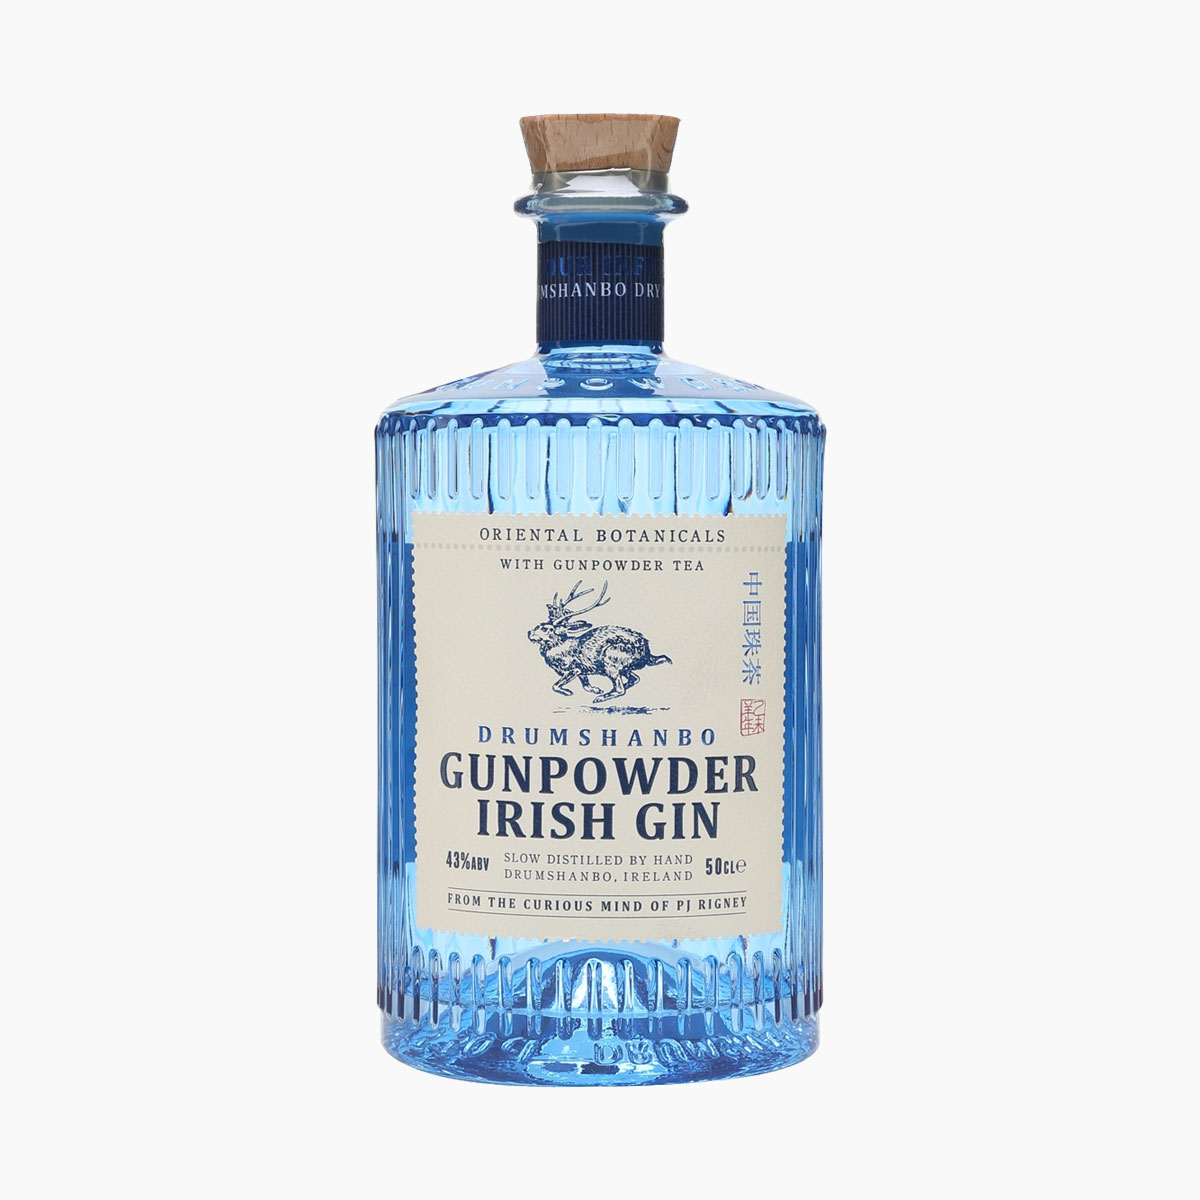 Brug Drumshanbo Gunpowder Irish Gin - 500 ml til en forbedret oplevelse